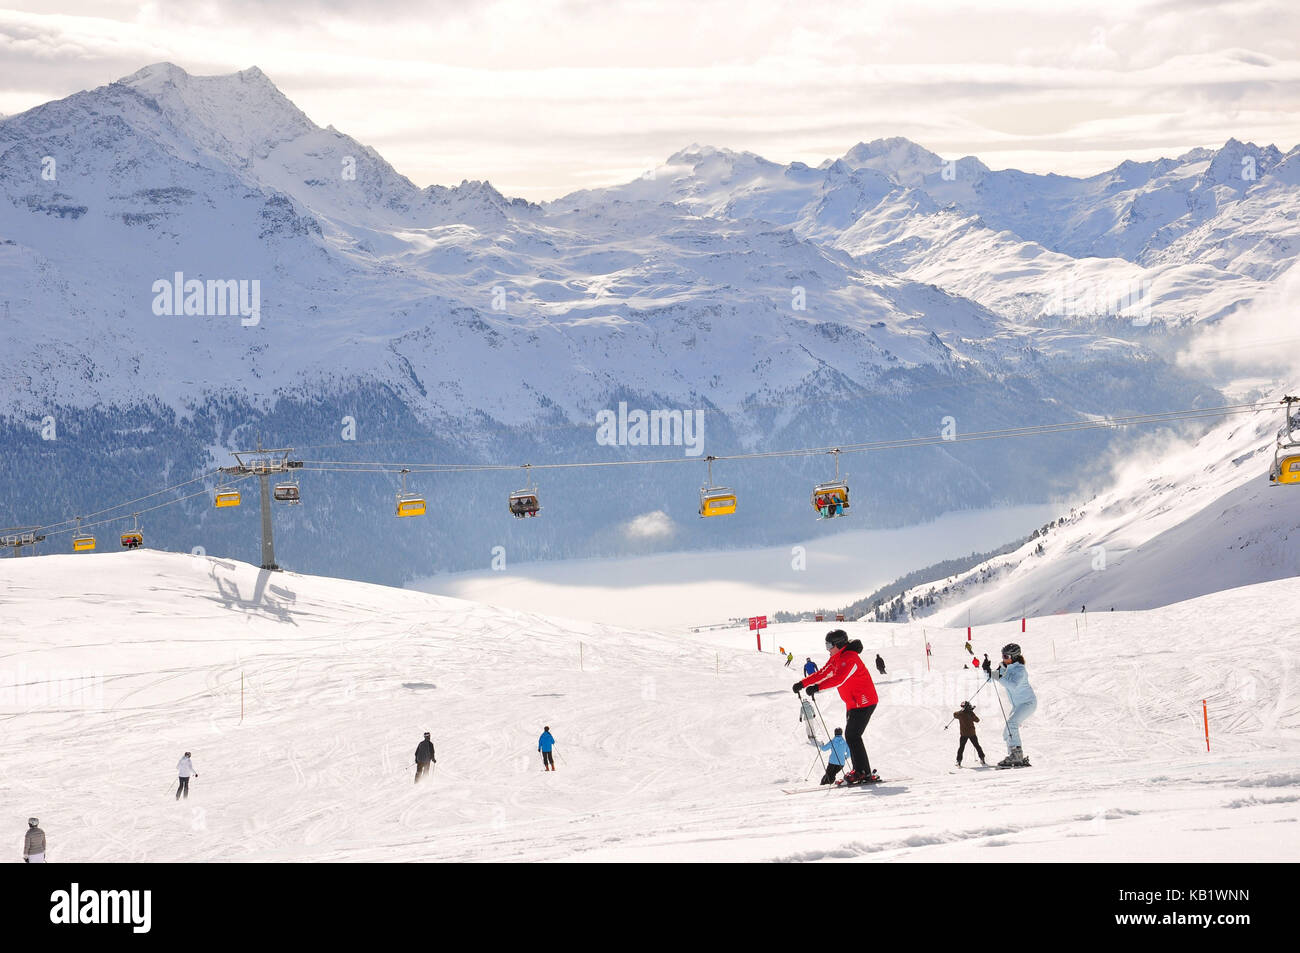 La Suisse, canton des Grisons, l'Engadine, st. MORITZ, corviglia, piste de ski, skieur, des pics de montagne, les hivers, Banque D'Images